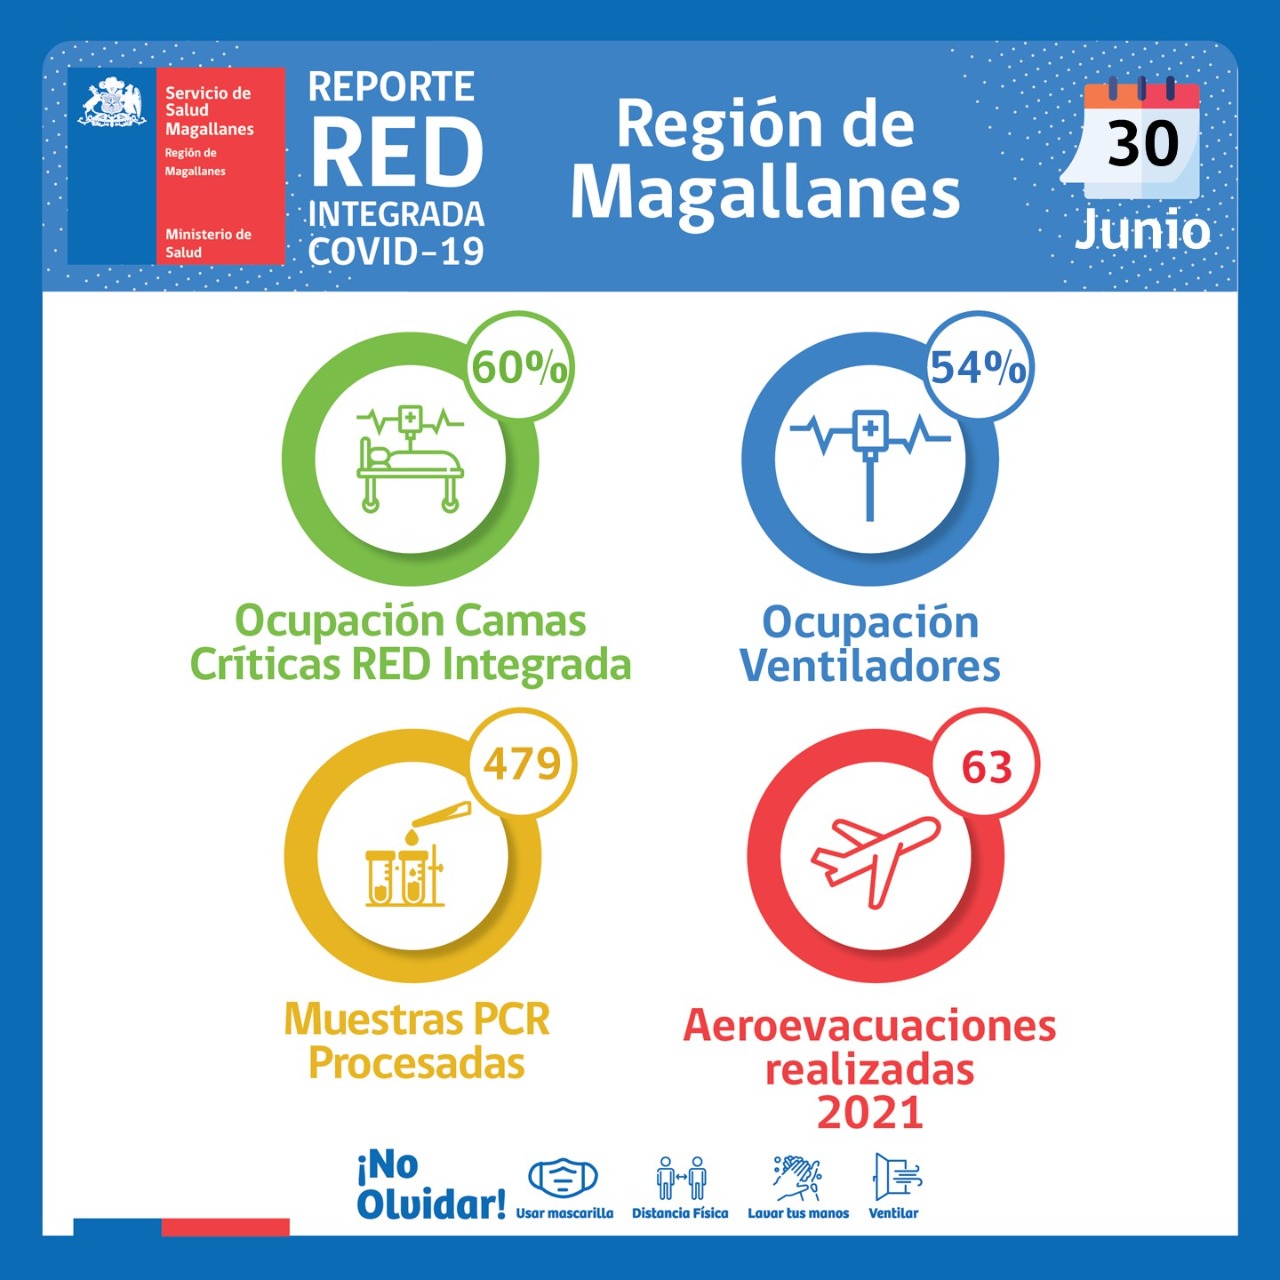 Estado de la red integrada Covid19 en Magallanes, al miércoles 30 de junio